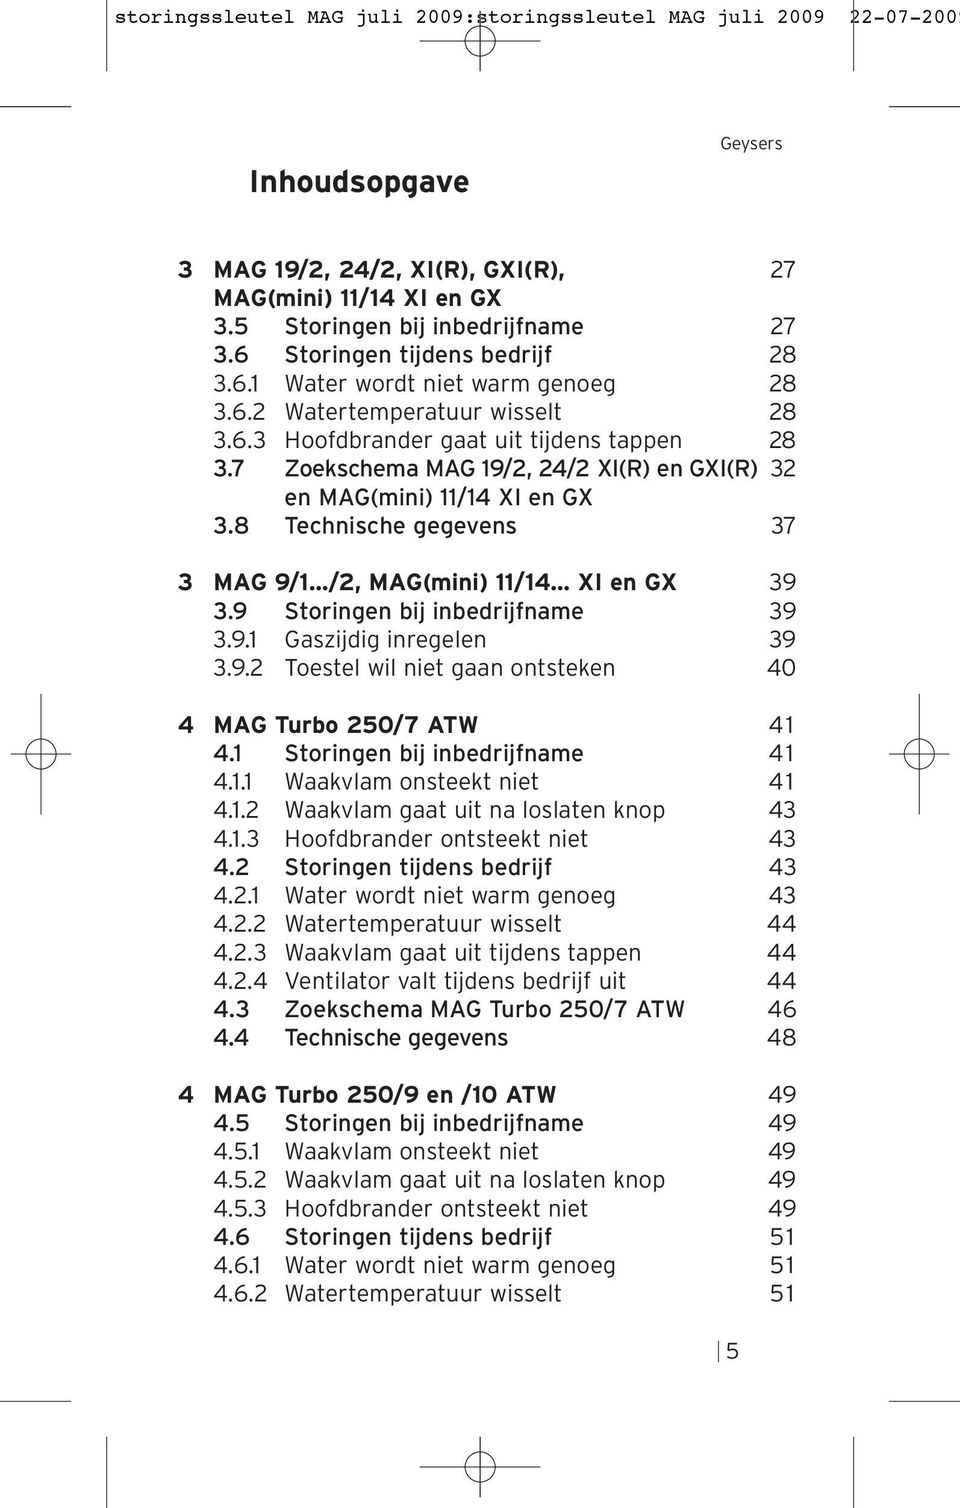 7 Zoekschema MAG 19/2, 24/2 XI(R) en GXI(R) 32 en MAG(mini) 11/14 XI en GX 3.8 Technische gegevens 37 3 MAG 9/1 /2, MAG(mini) 11/14 XI en GX 39 3.9 Storingen bij inbedrijfname 39 3.9.1 Gaszijdig inregelen 39 3.